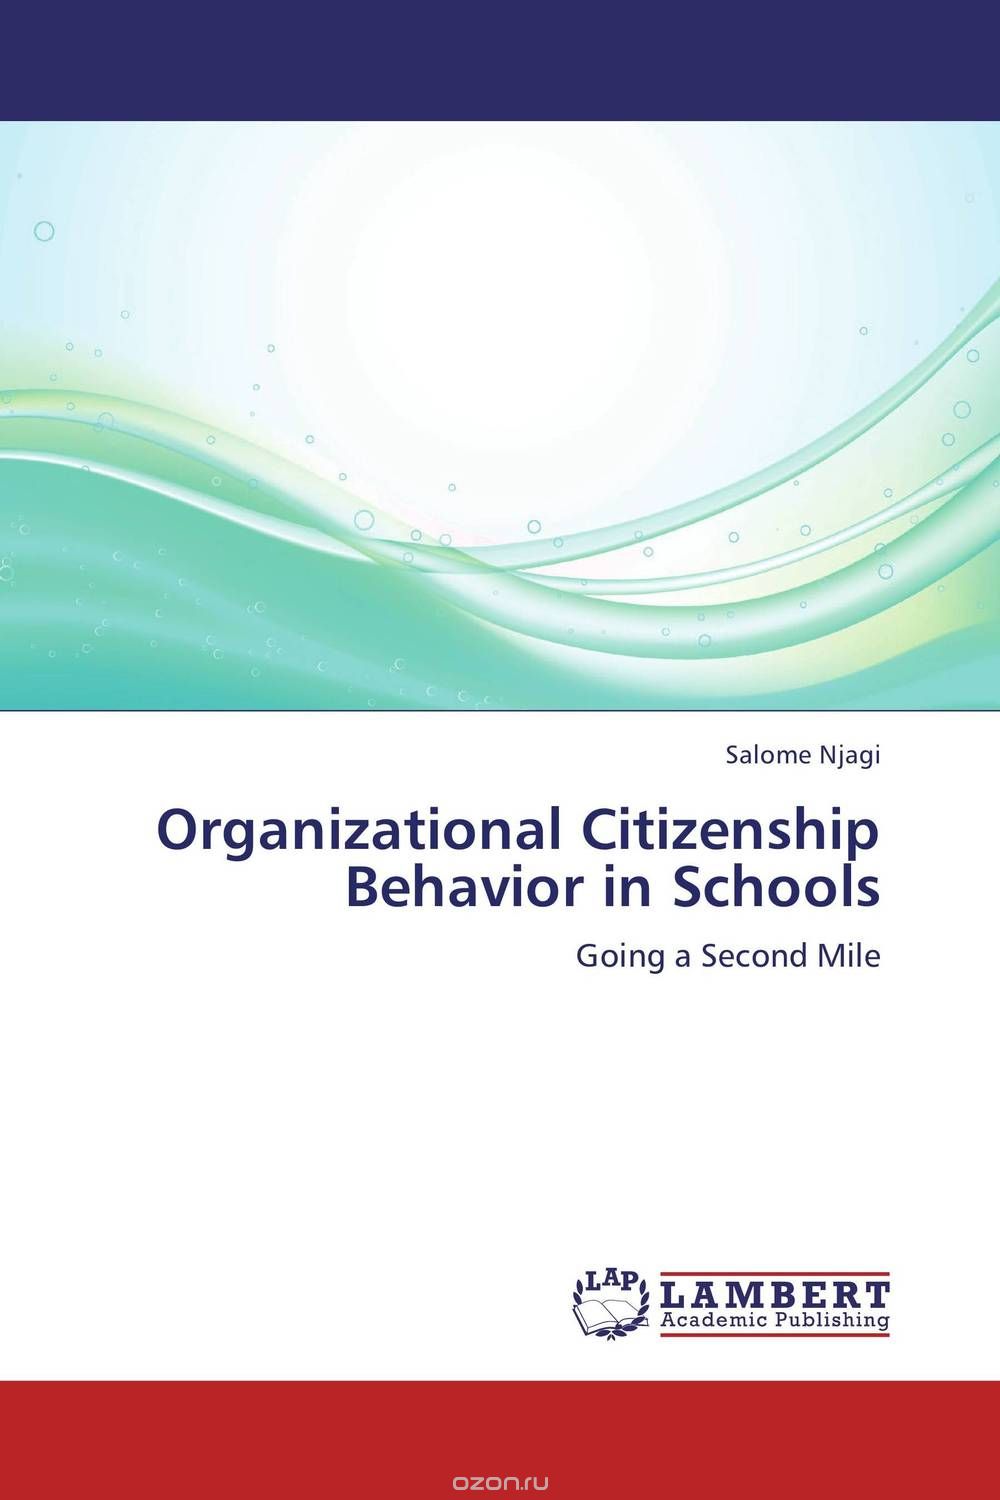 Скачать книгу "Organizational Citizenship Behavior in Schools"